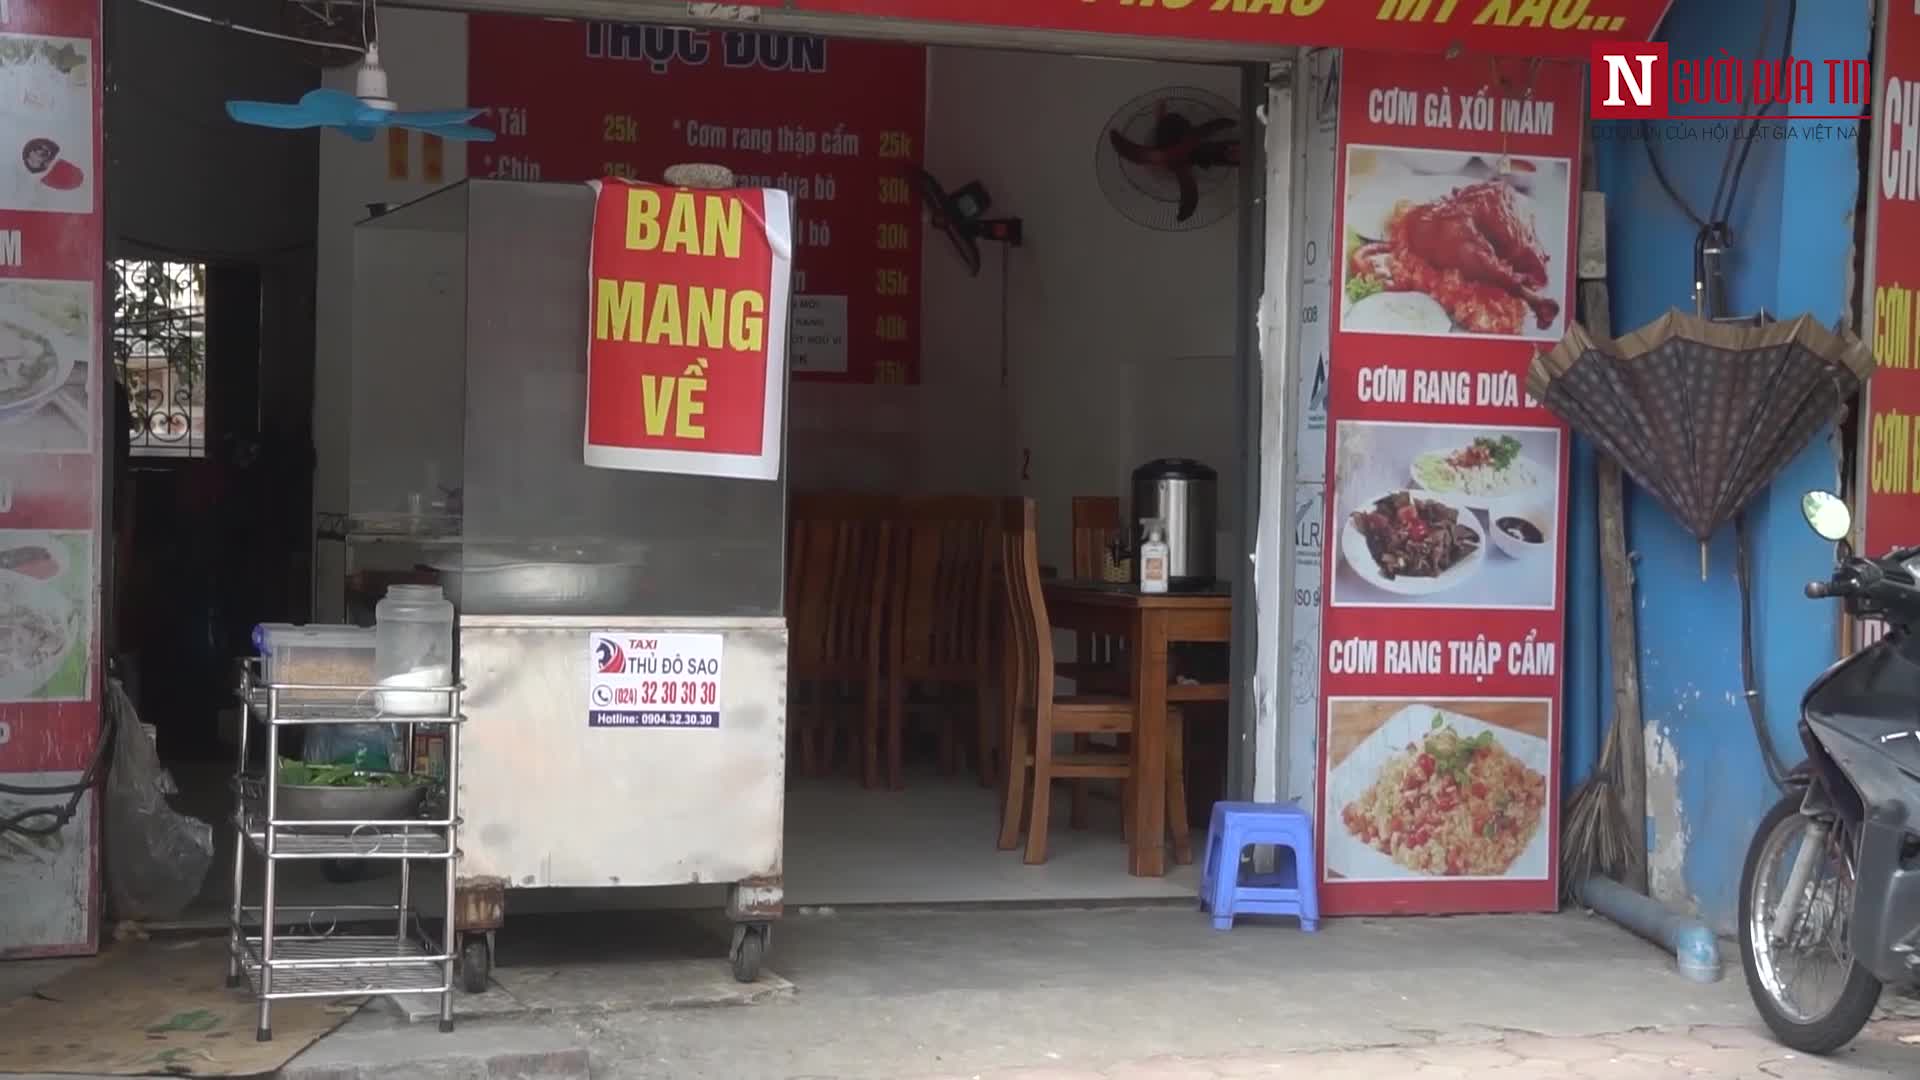 Dân sinh - Hà Nội: Hàng ăn 'vùng xanh' bắt đầu được phép bán mang về